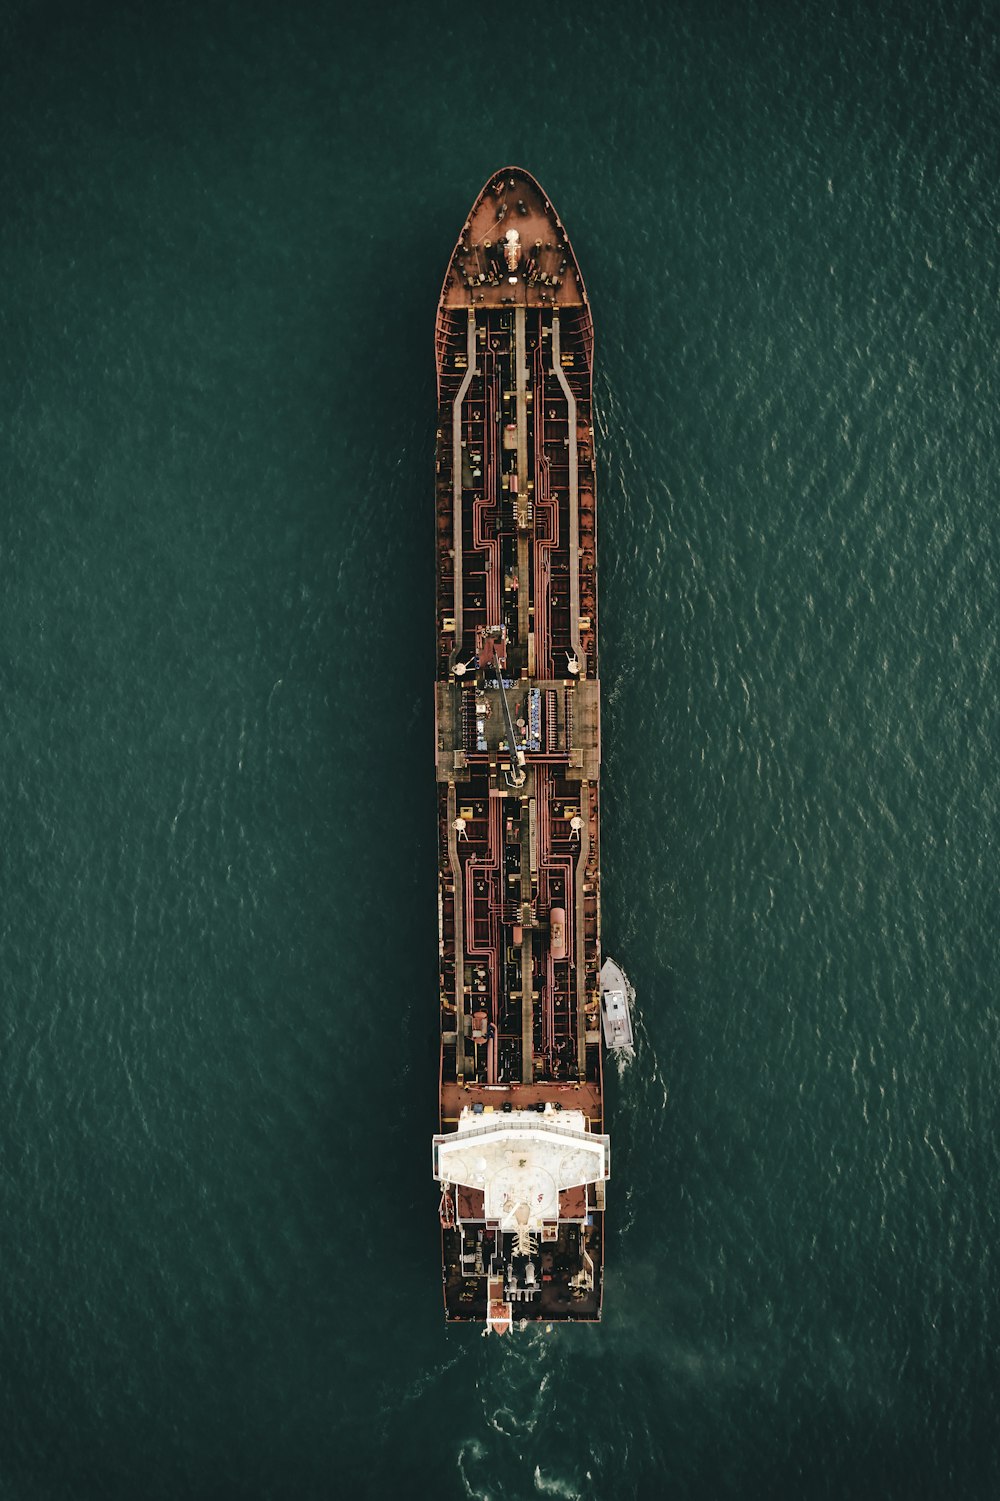 vista aérea do edifício marrom e branco no corpo de água durante o dia